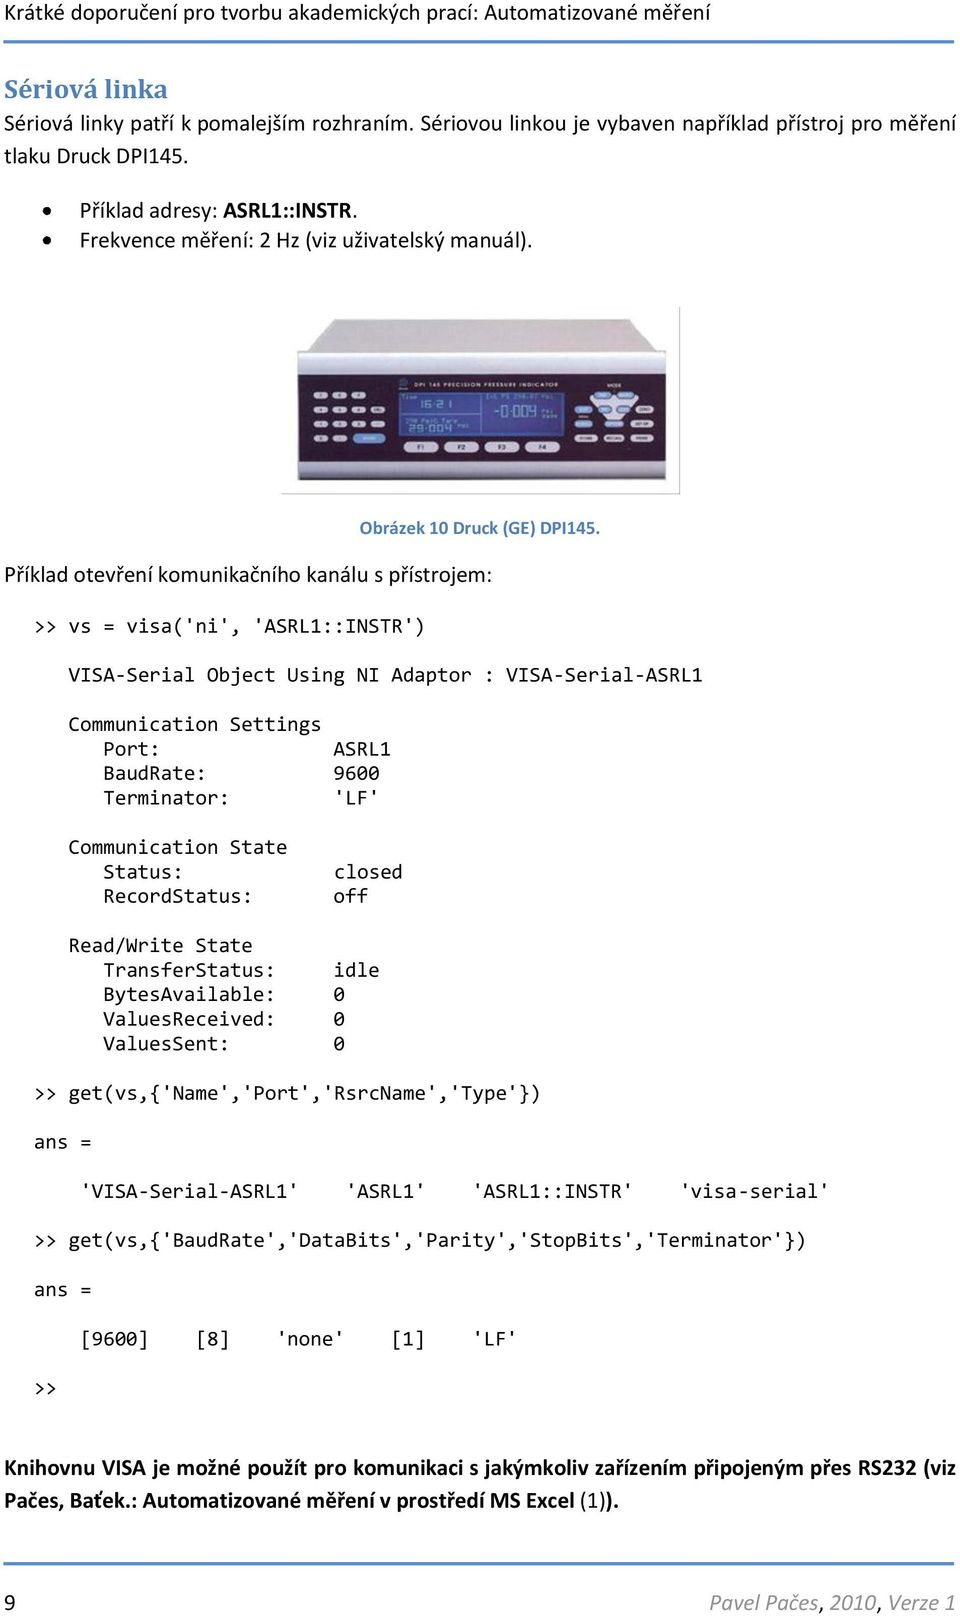 Příklad otevření komunikačního kanálu s přístrojem: >> vs = visa('ni', 'ASRL1::INSTR') VISA-Serial Object Using NI Adaptor : VISA-Serial-ASRL1 Communication Settings Port: ASRL1 BaudRate: 9600